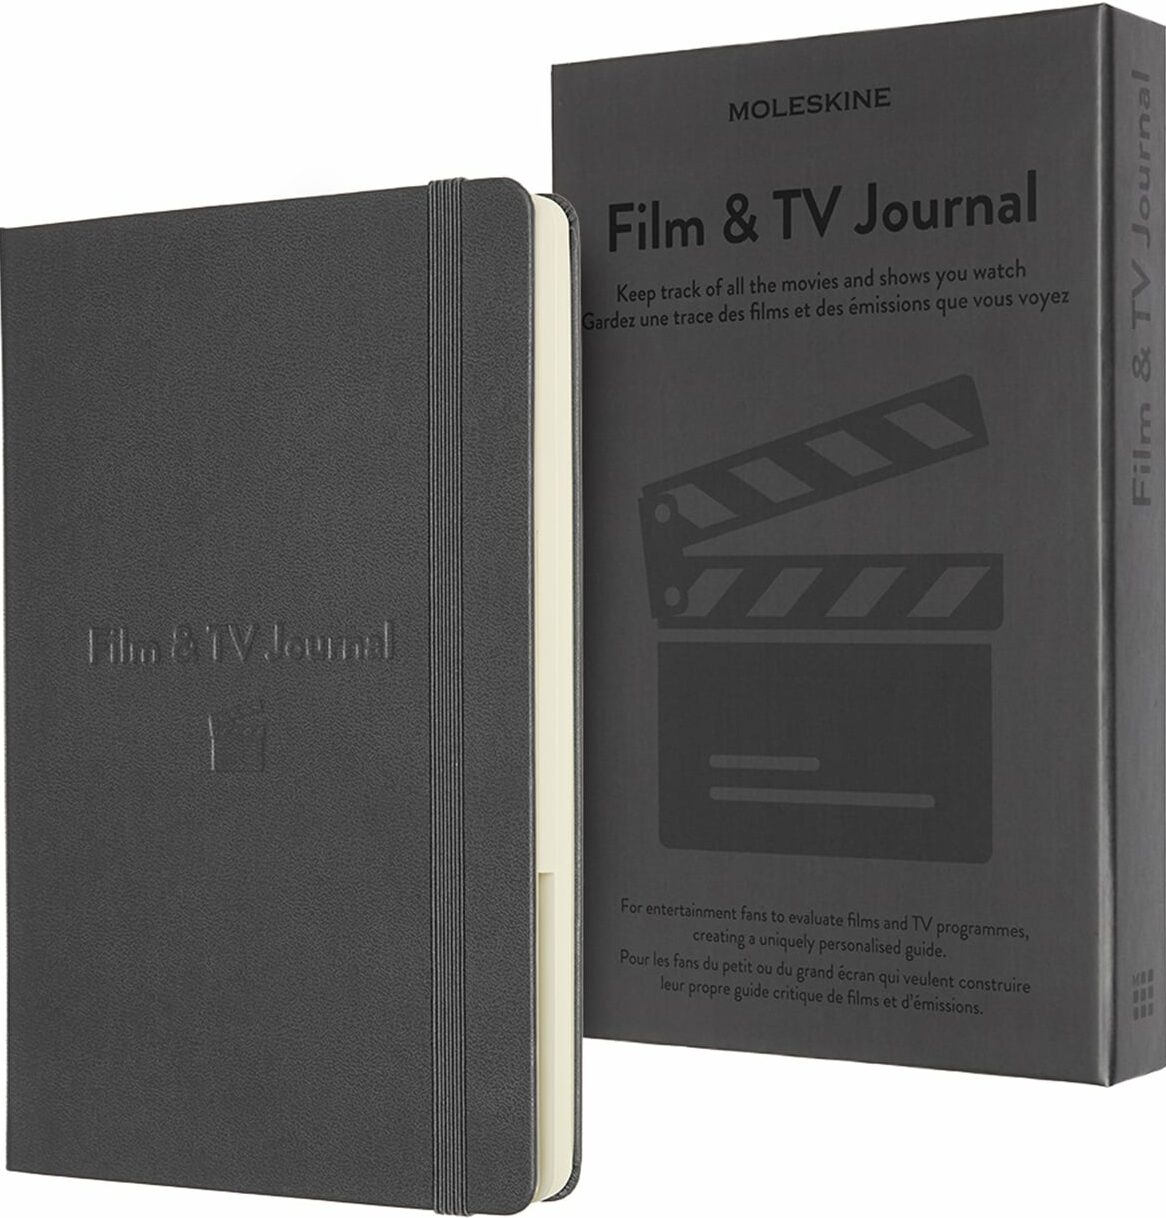 Film & TV Journal